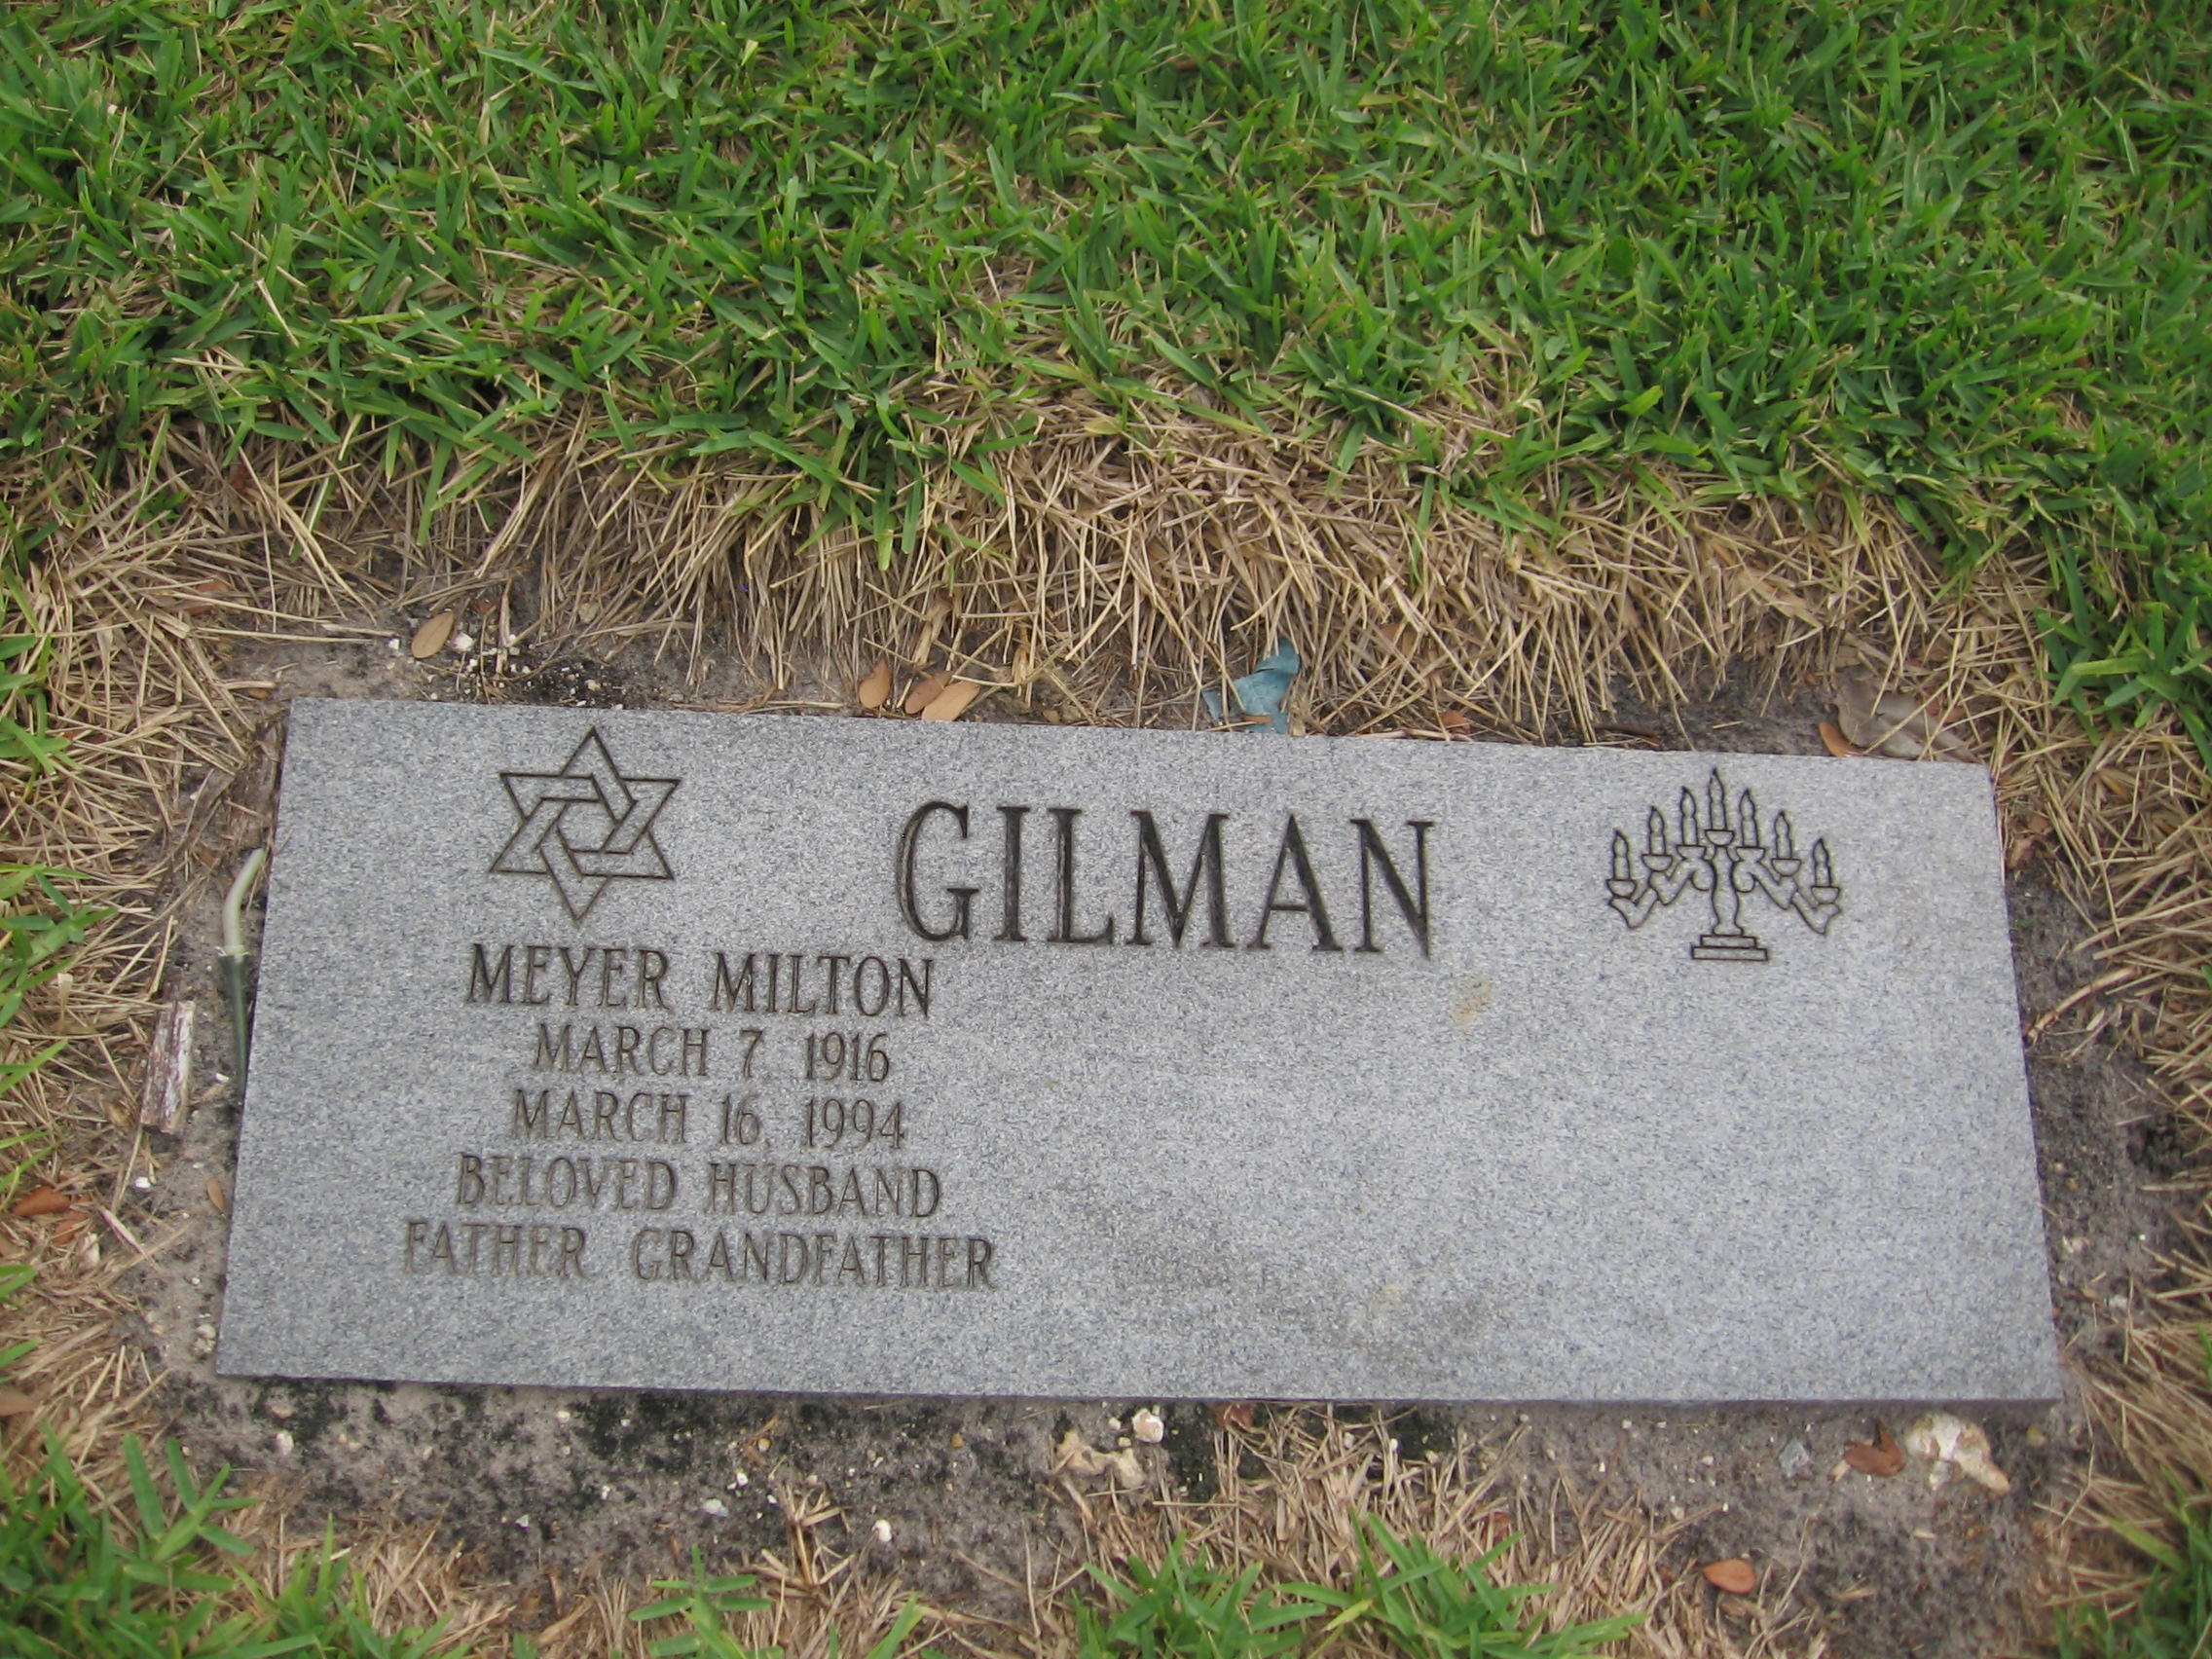 Meyer Milton Gilman